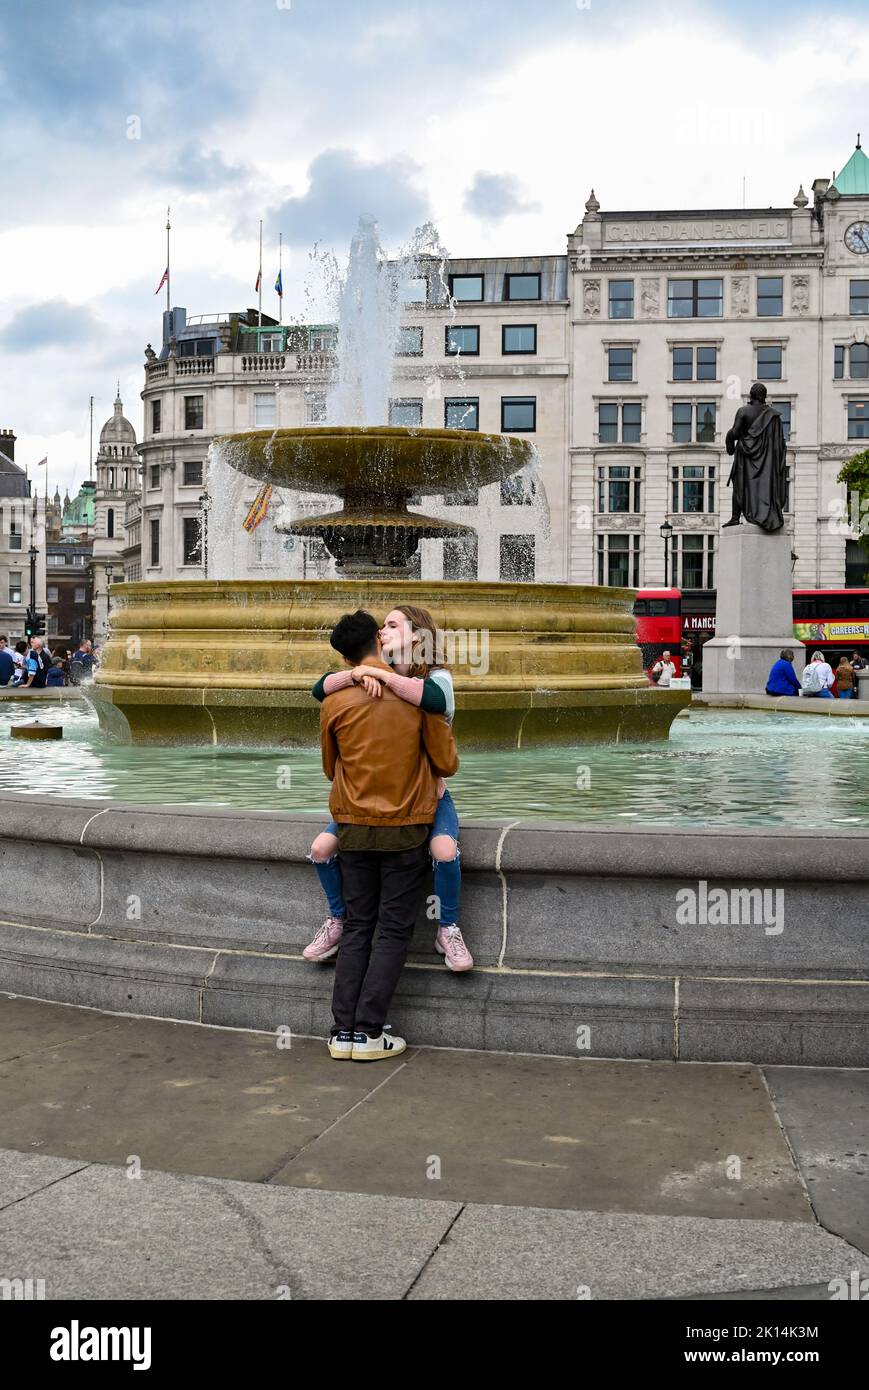 Trafalgar Square Londres Royaume-Uni - couple par l'une des fontaines de la place Photographie prise par Simon Dack Banque D'Images